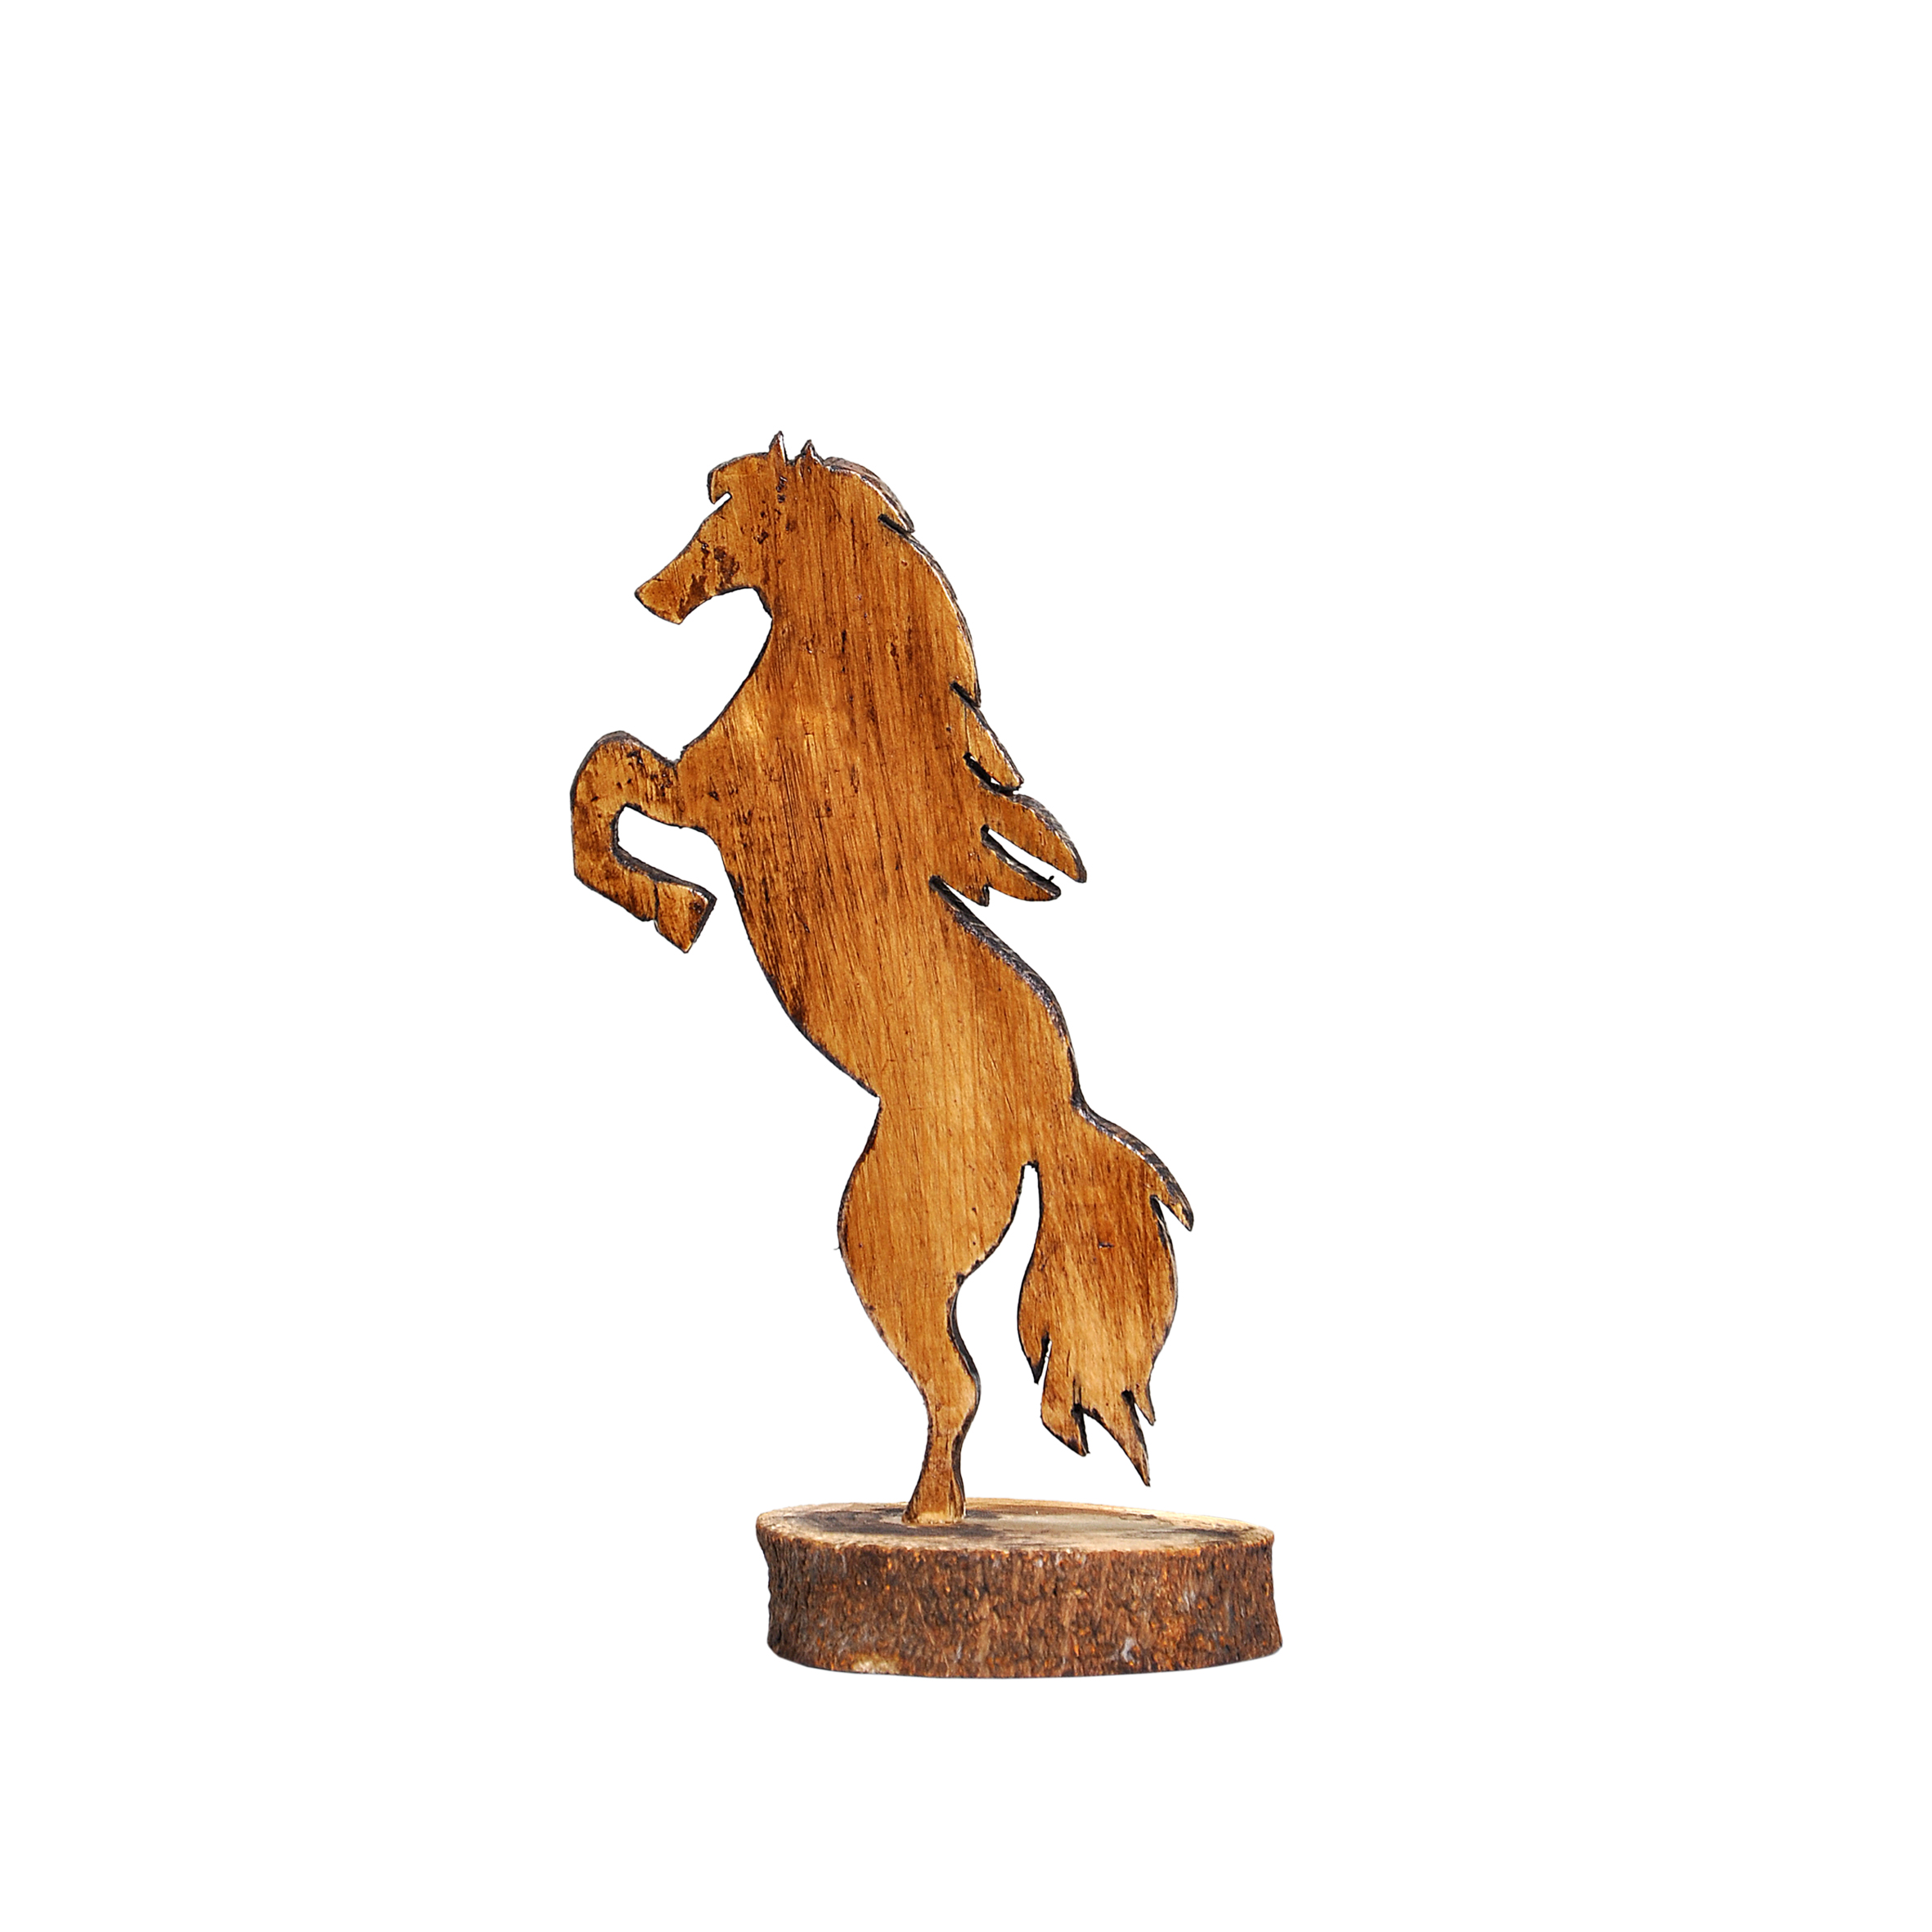 مجسمه چوبی طرح اسب کد 022ghk